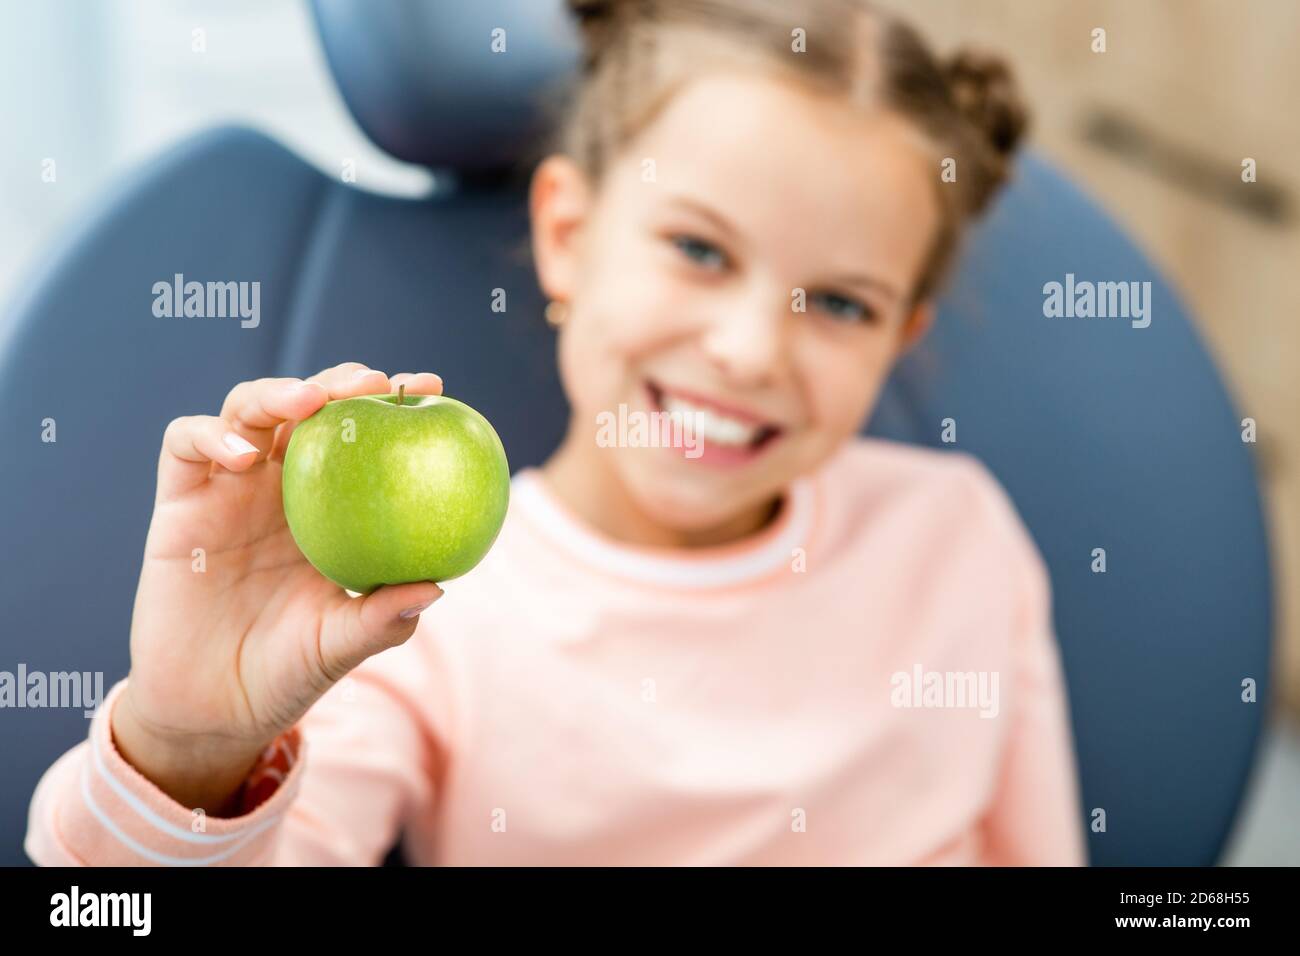 Cura dei denti dei bambini. Sorridente bambina che tiene una mela verde, si siede nella sedia del dentista. I miei denti sono sani Foto Stock